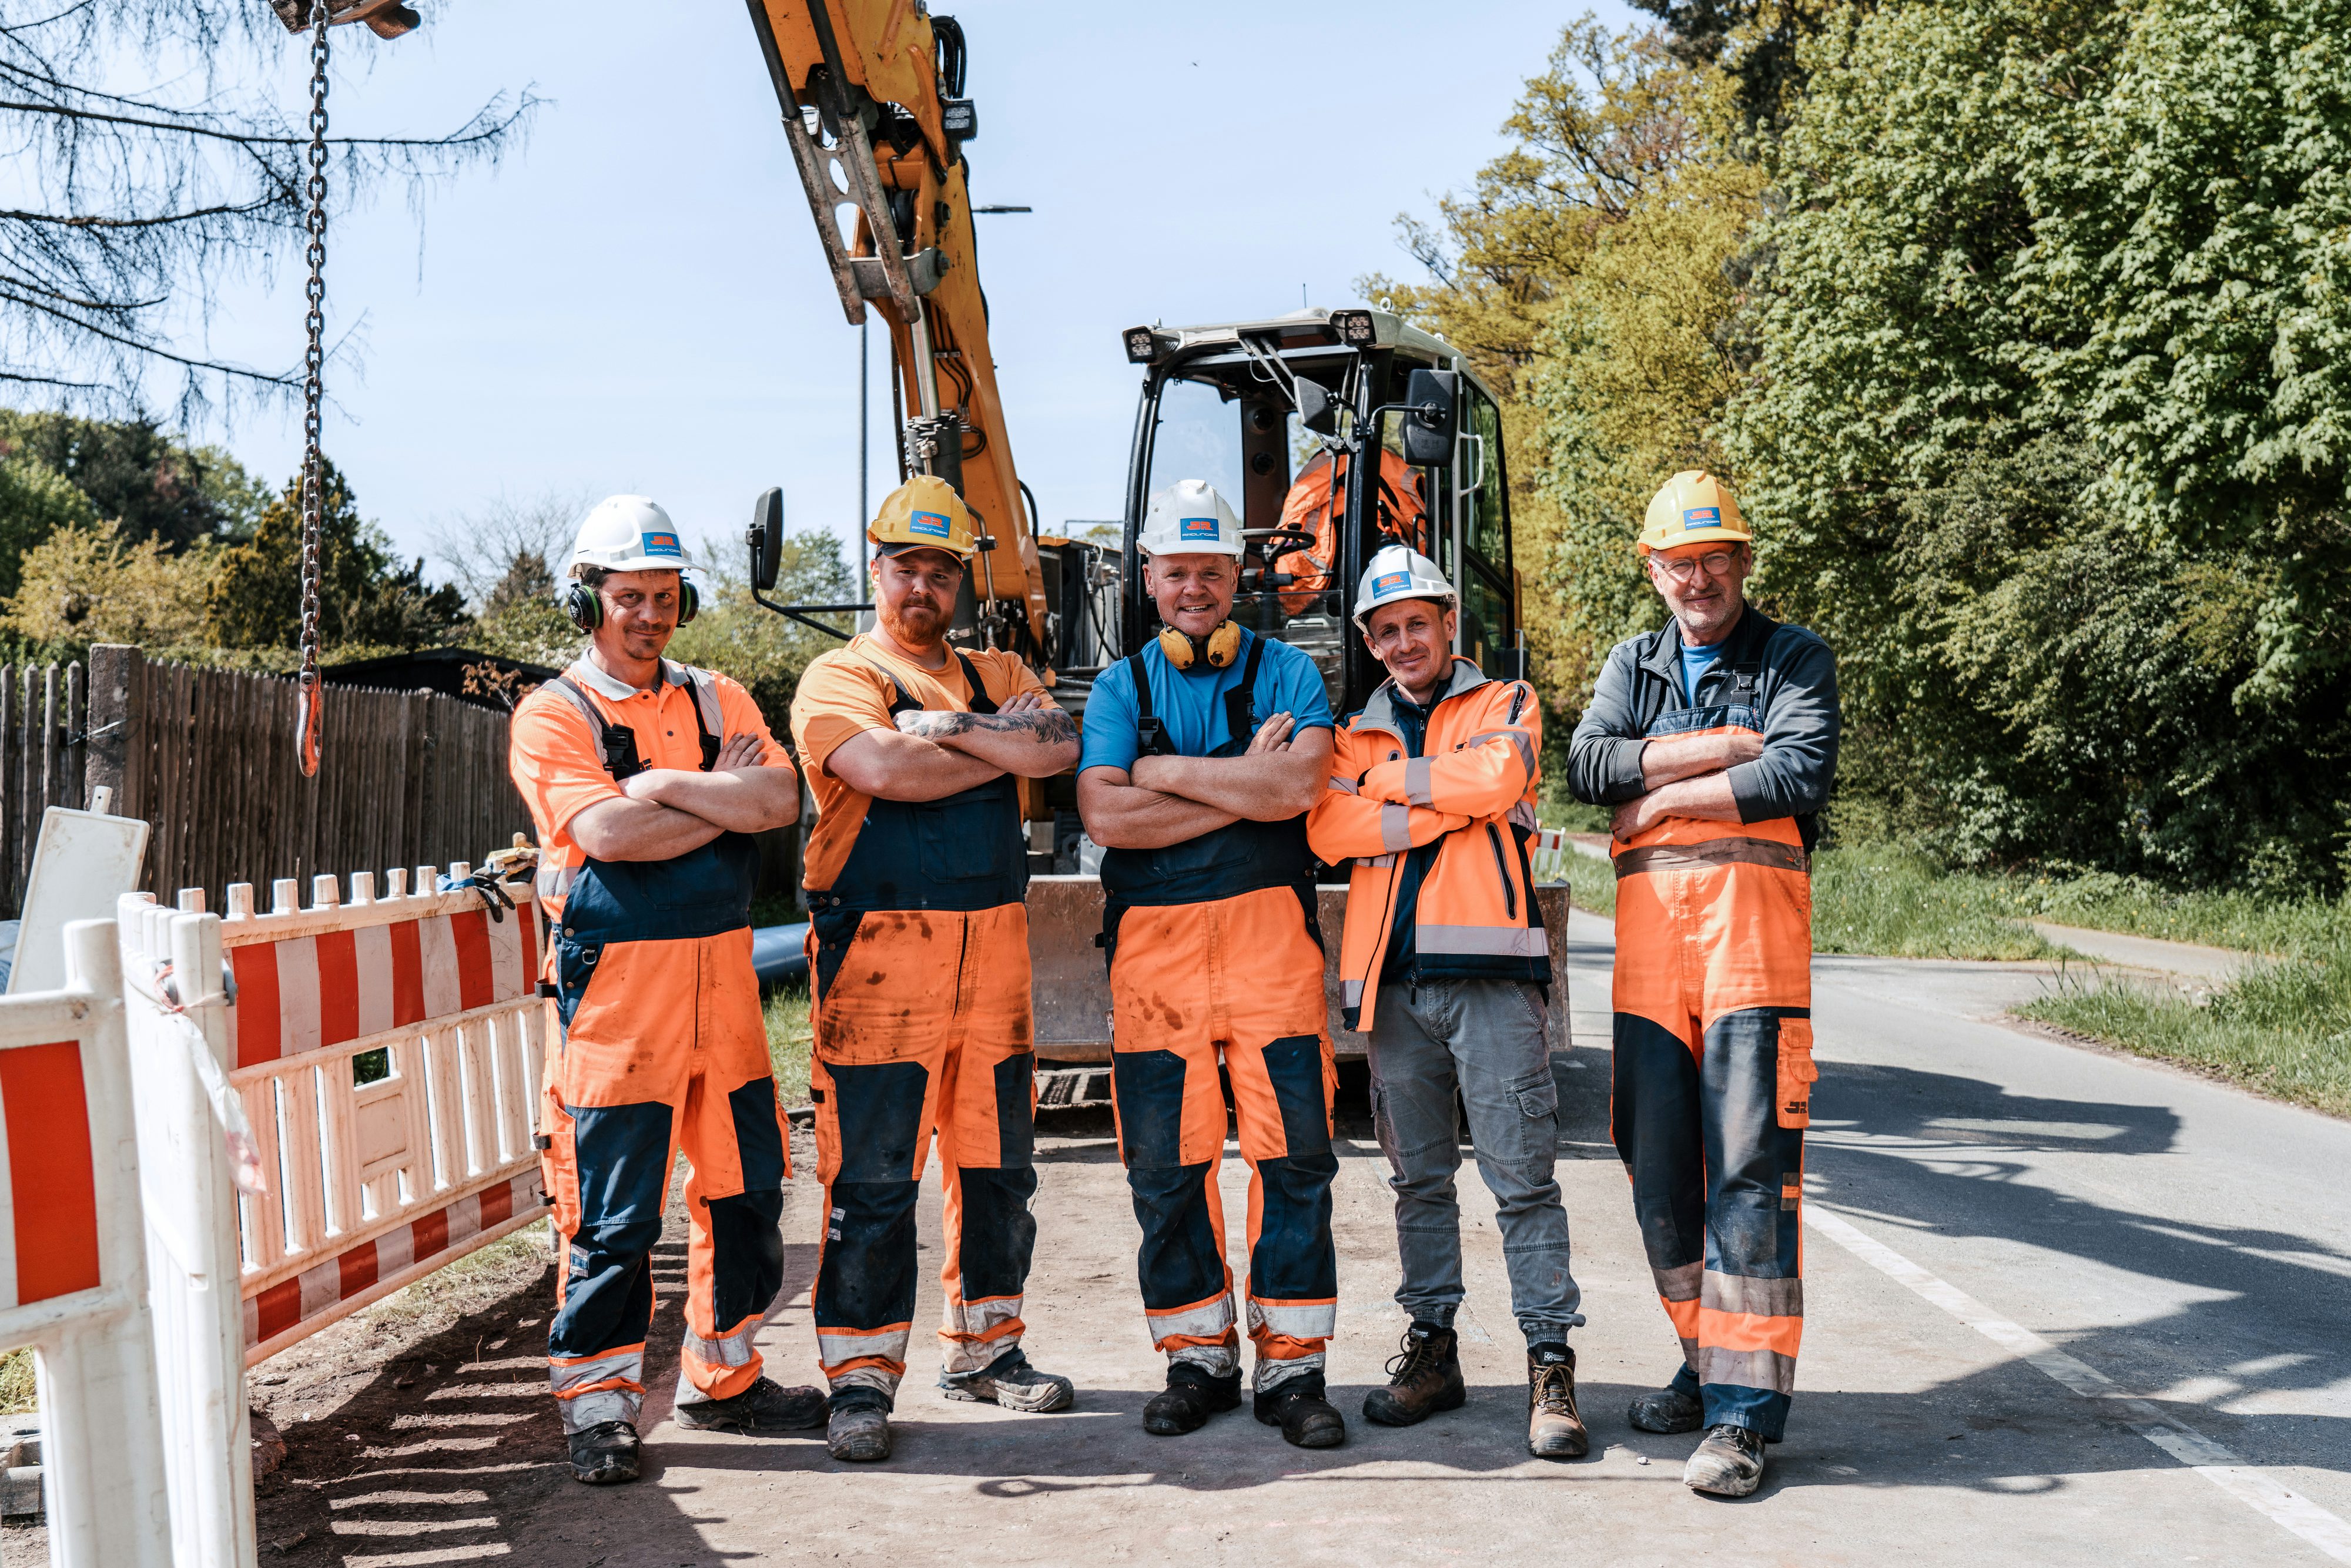 Fünf Baustellenarbeiter lächelnd und mit verschränkten Armen auf der Baustelle vor Bagger